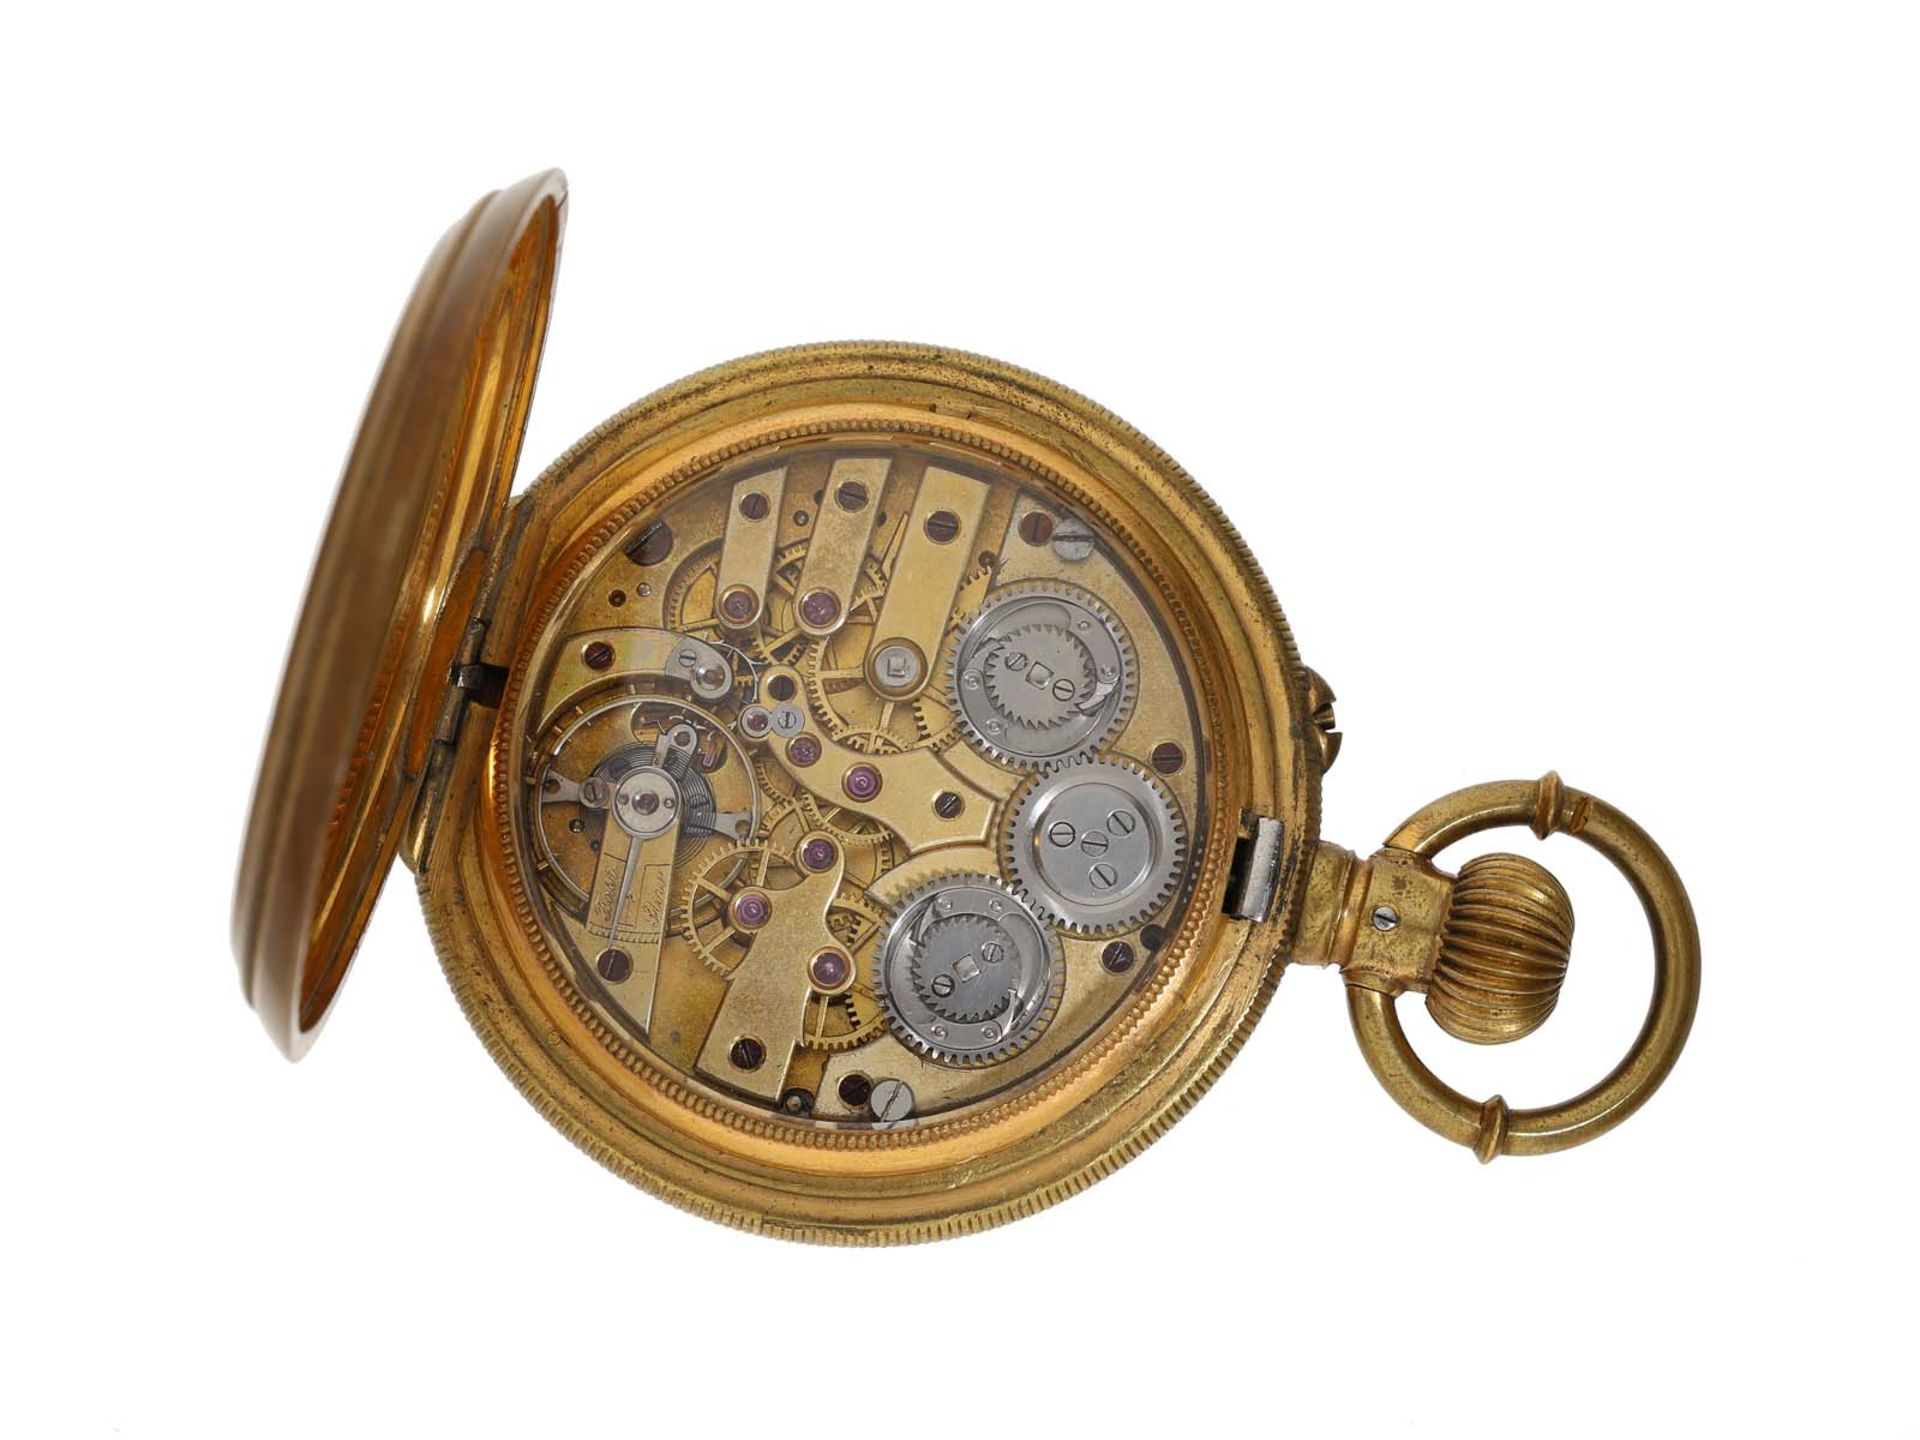 Taschenuhr: hochfeine Taschenuhr mit Seconde Morte und Tandem-Aufzug, ca. 1870 - Image 3 of 3